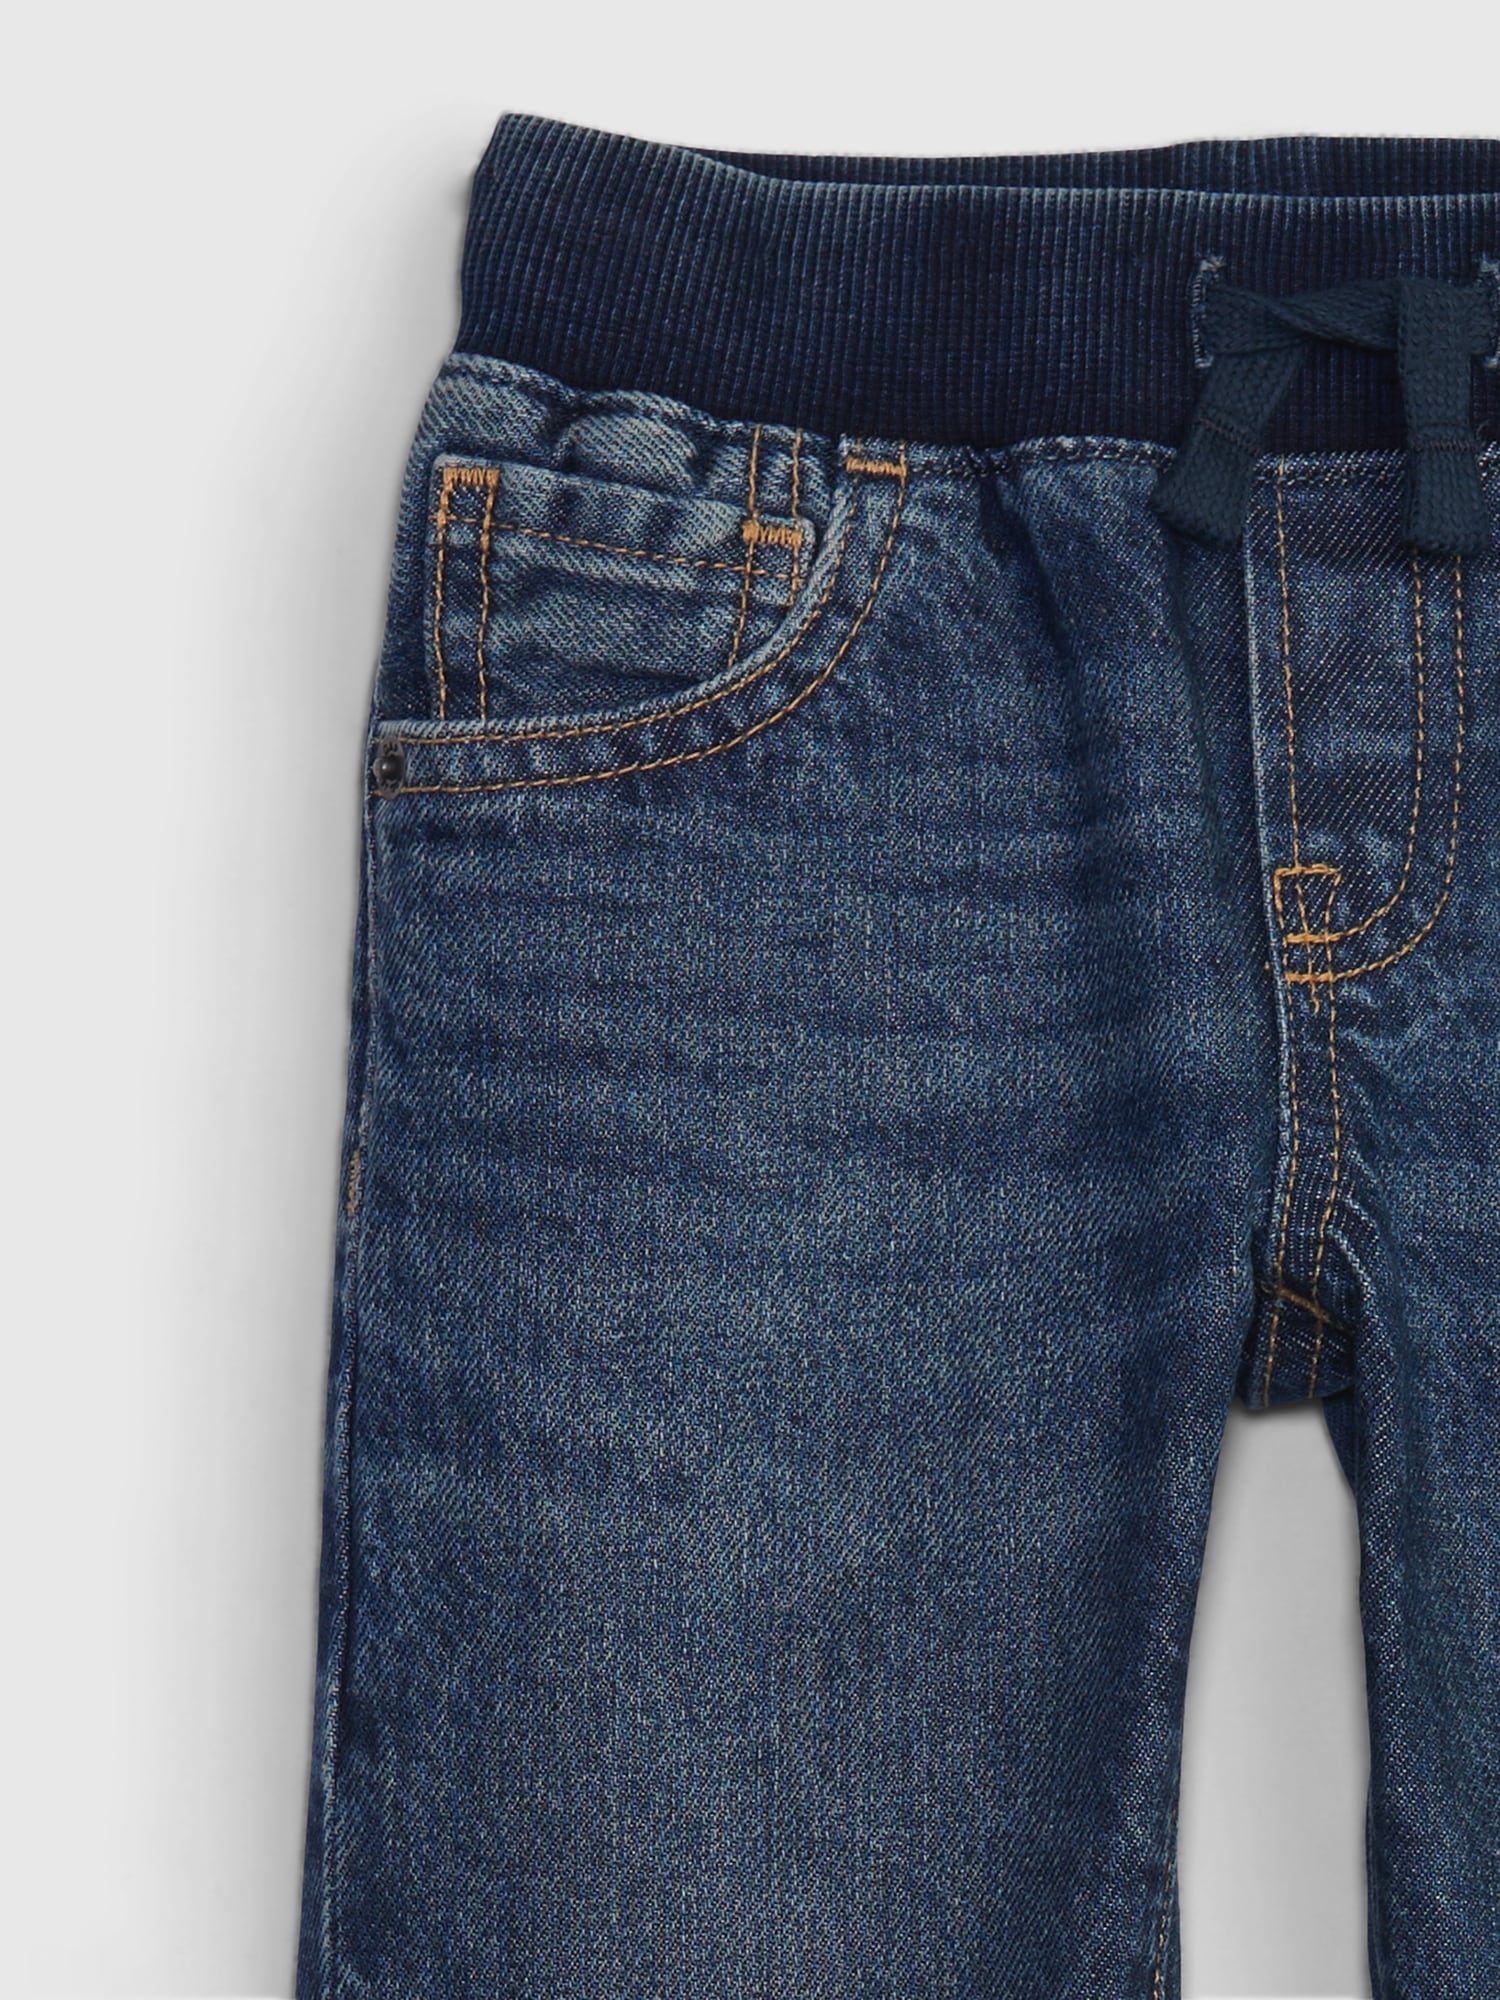 갭 Toddler 90s Original Straight Jeans